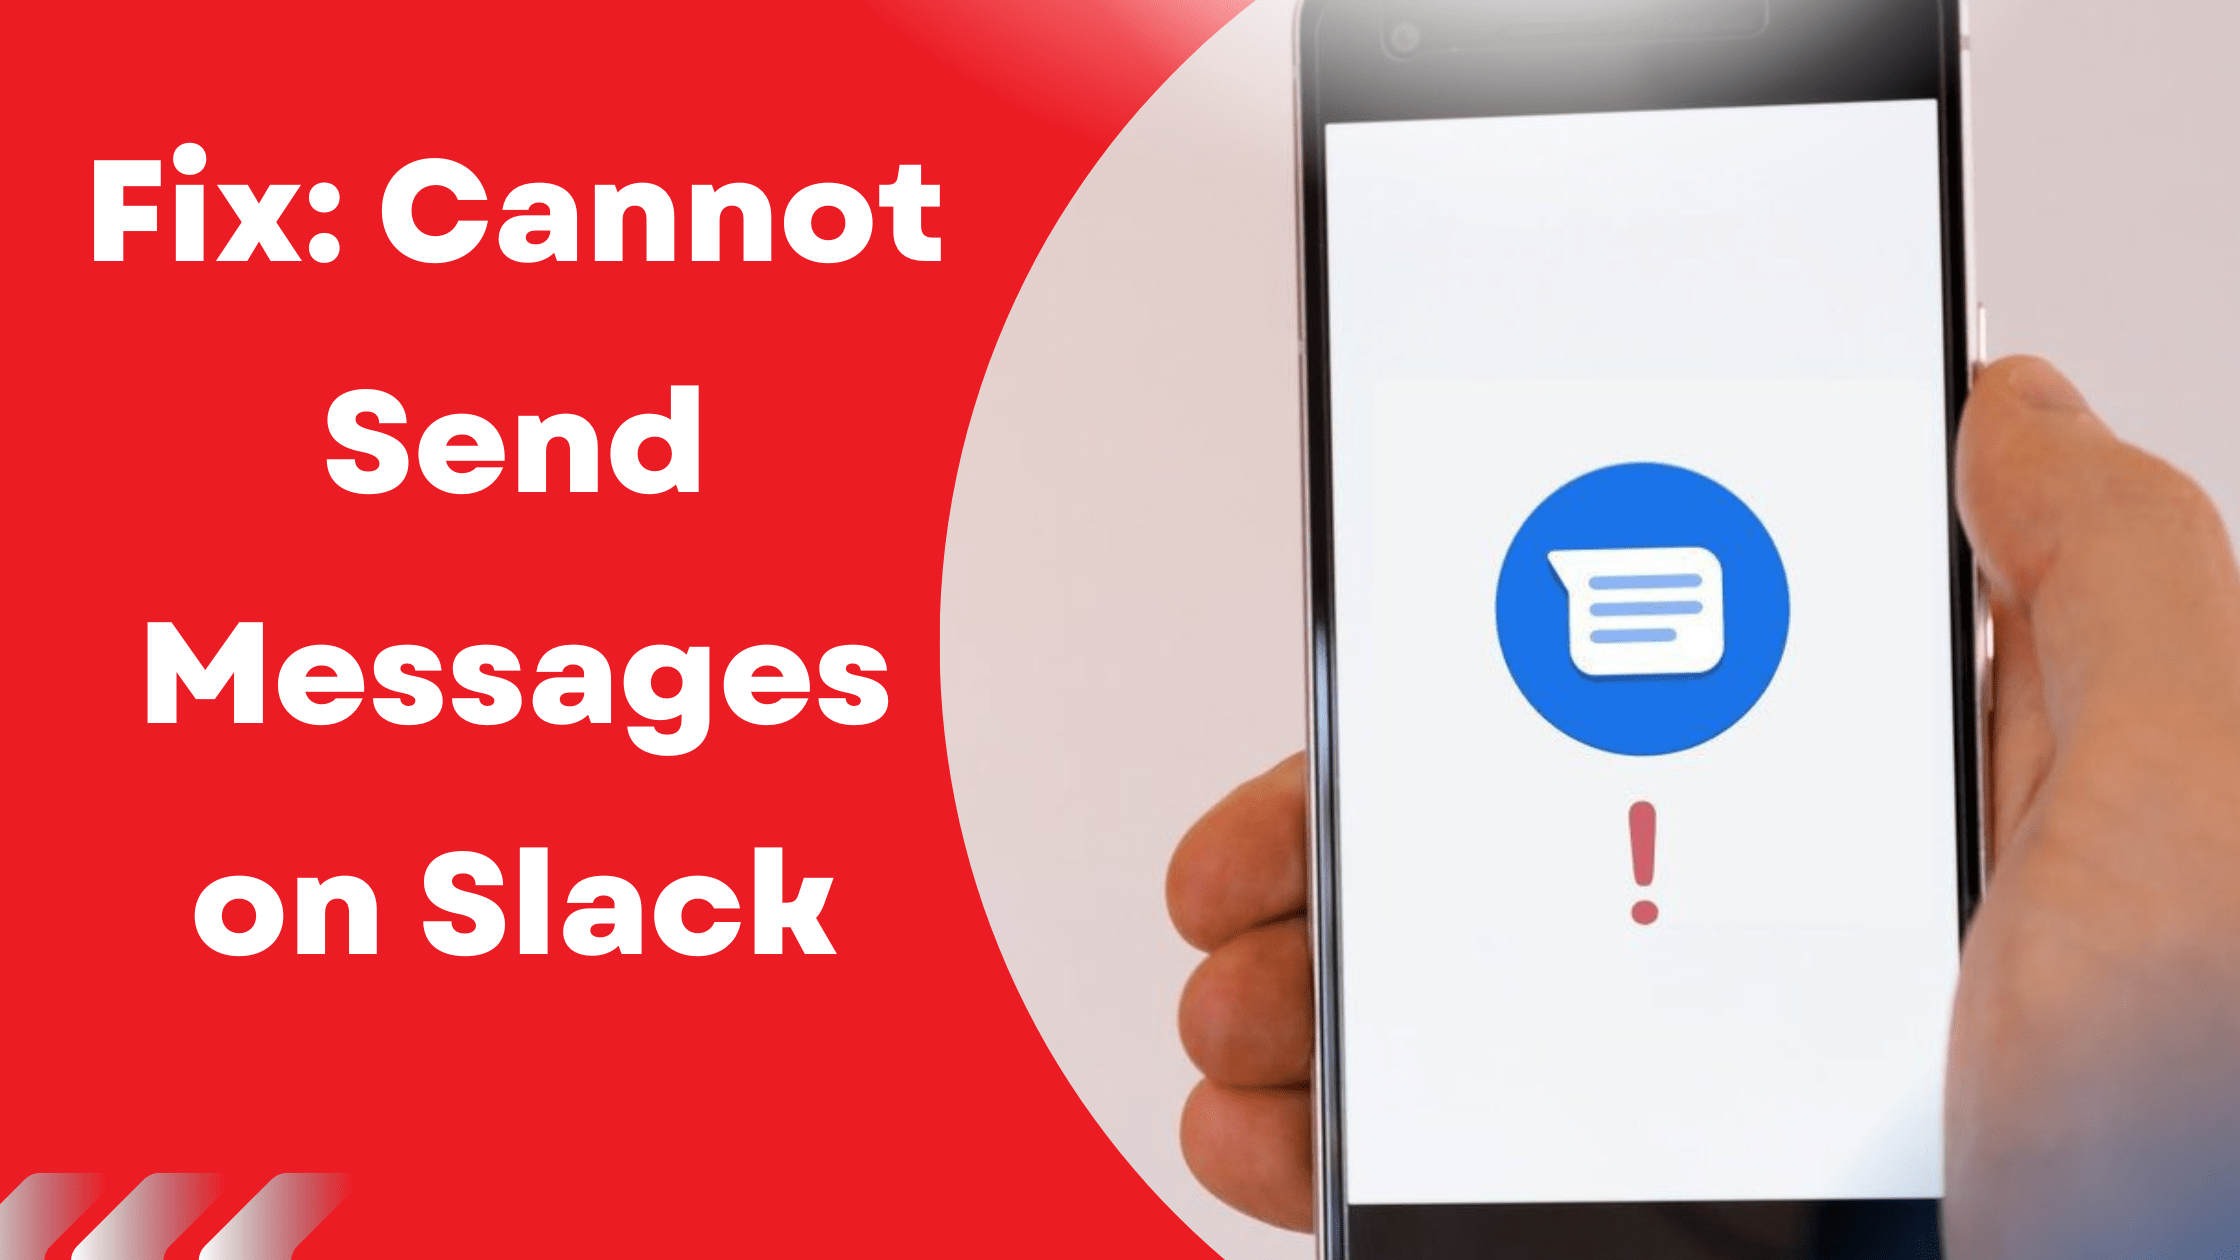 Fix: cannot send messages on slack